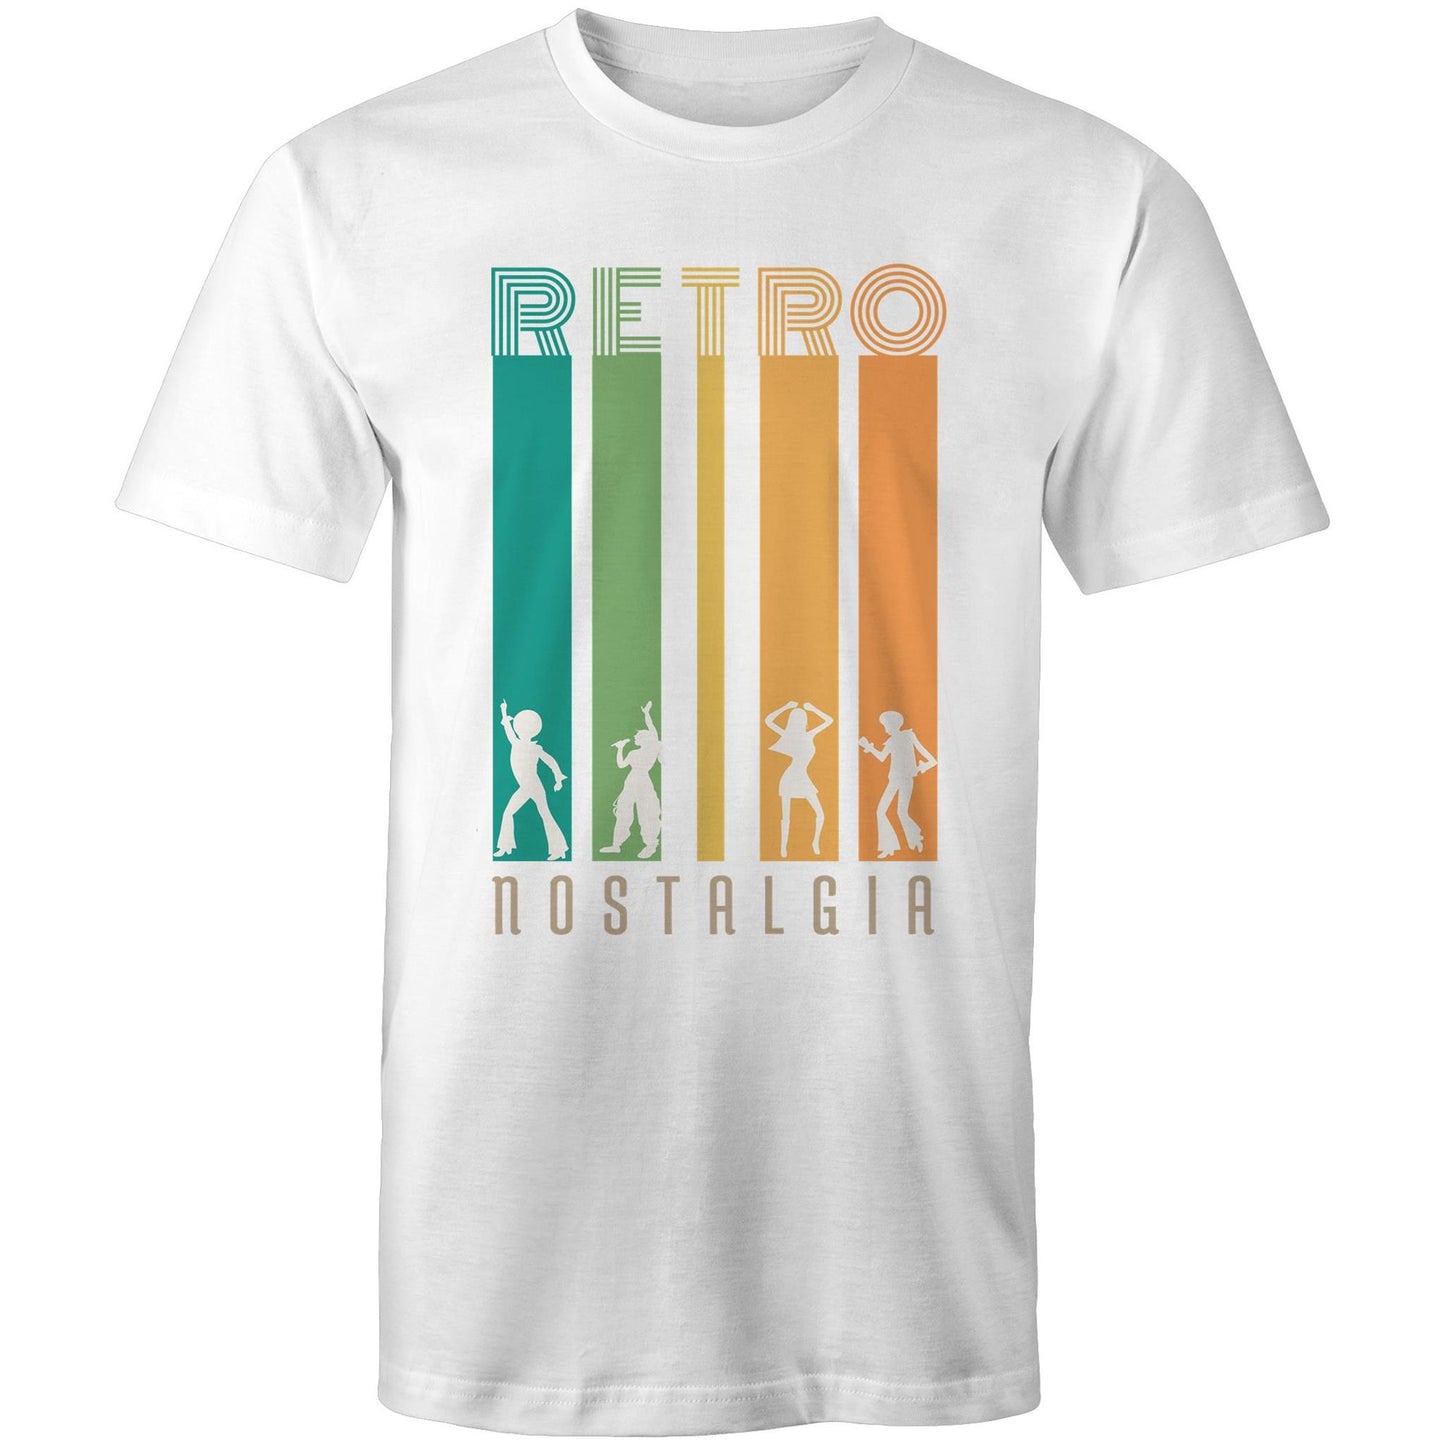 Retro Nostalgia - Mens T-Shirt White Mens T-shirt Retro